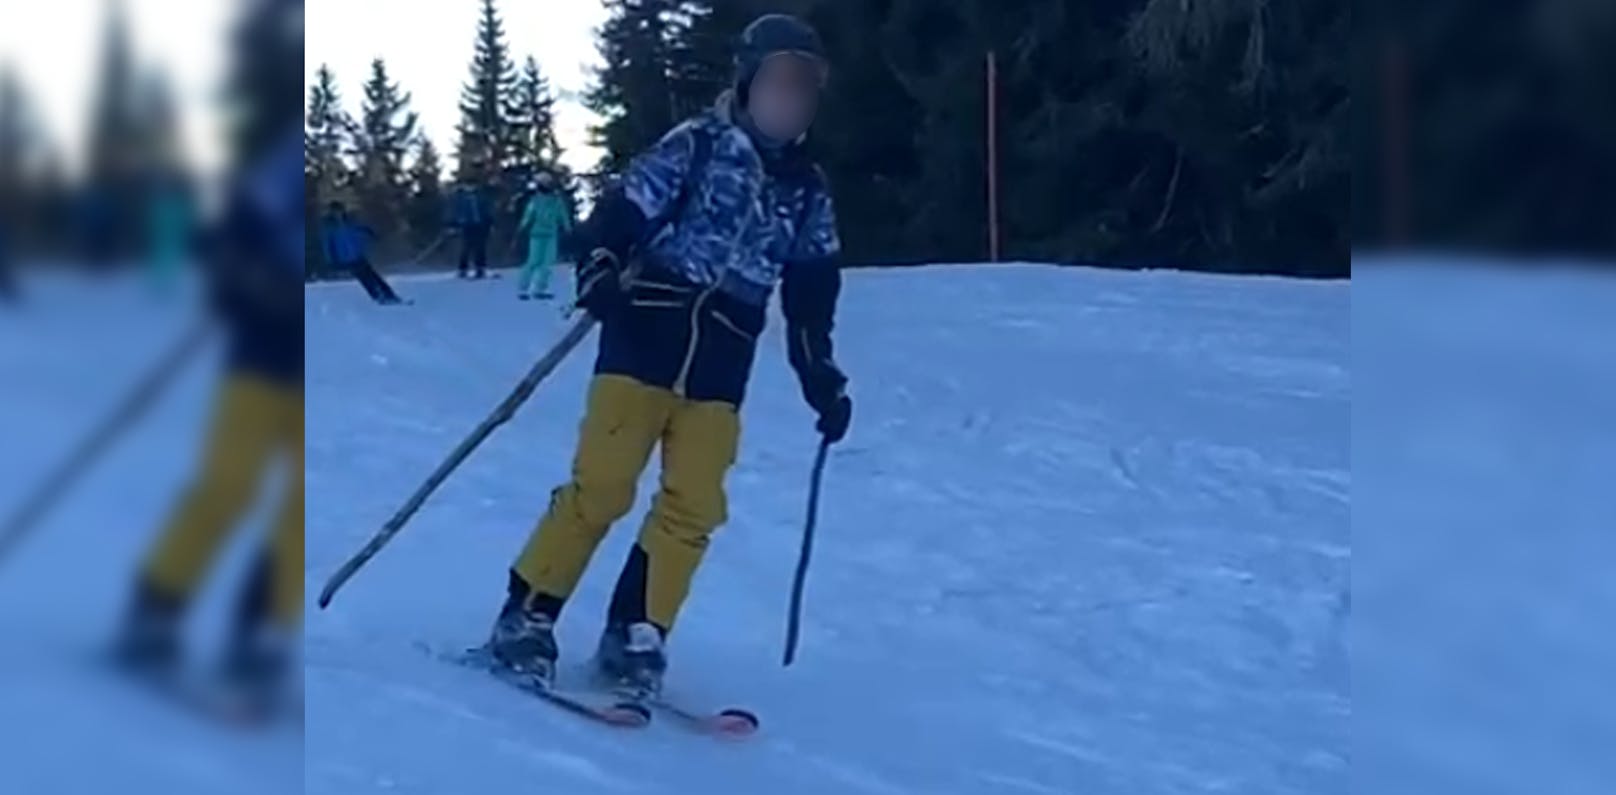 Bursch vergisst Skistöcke, fährt mit Ästen über Piste